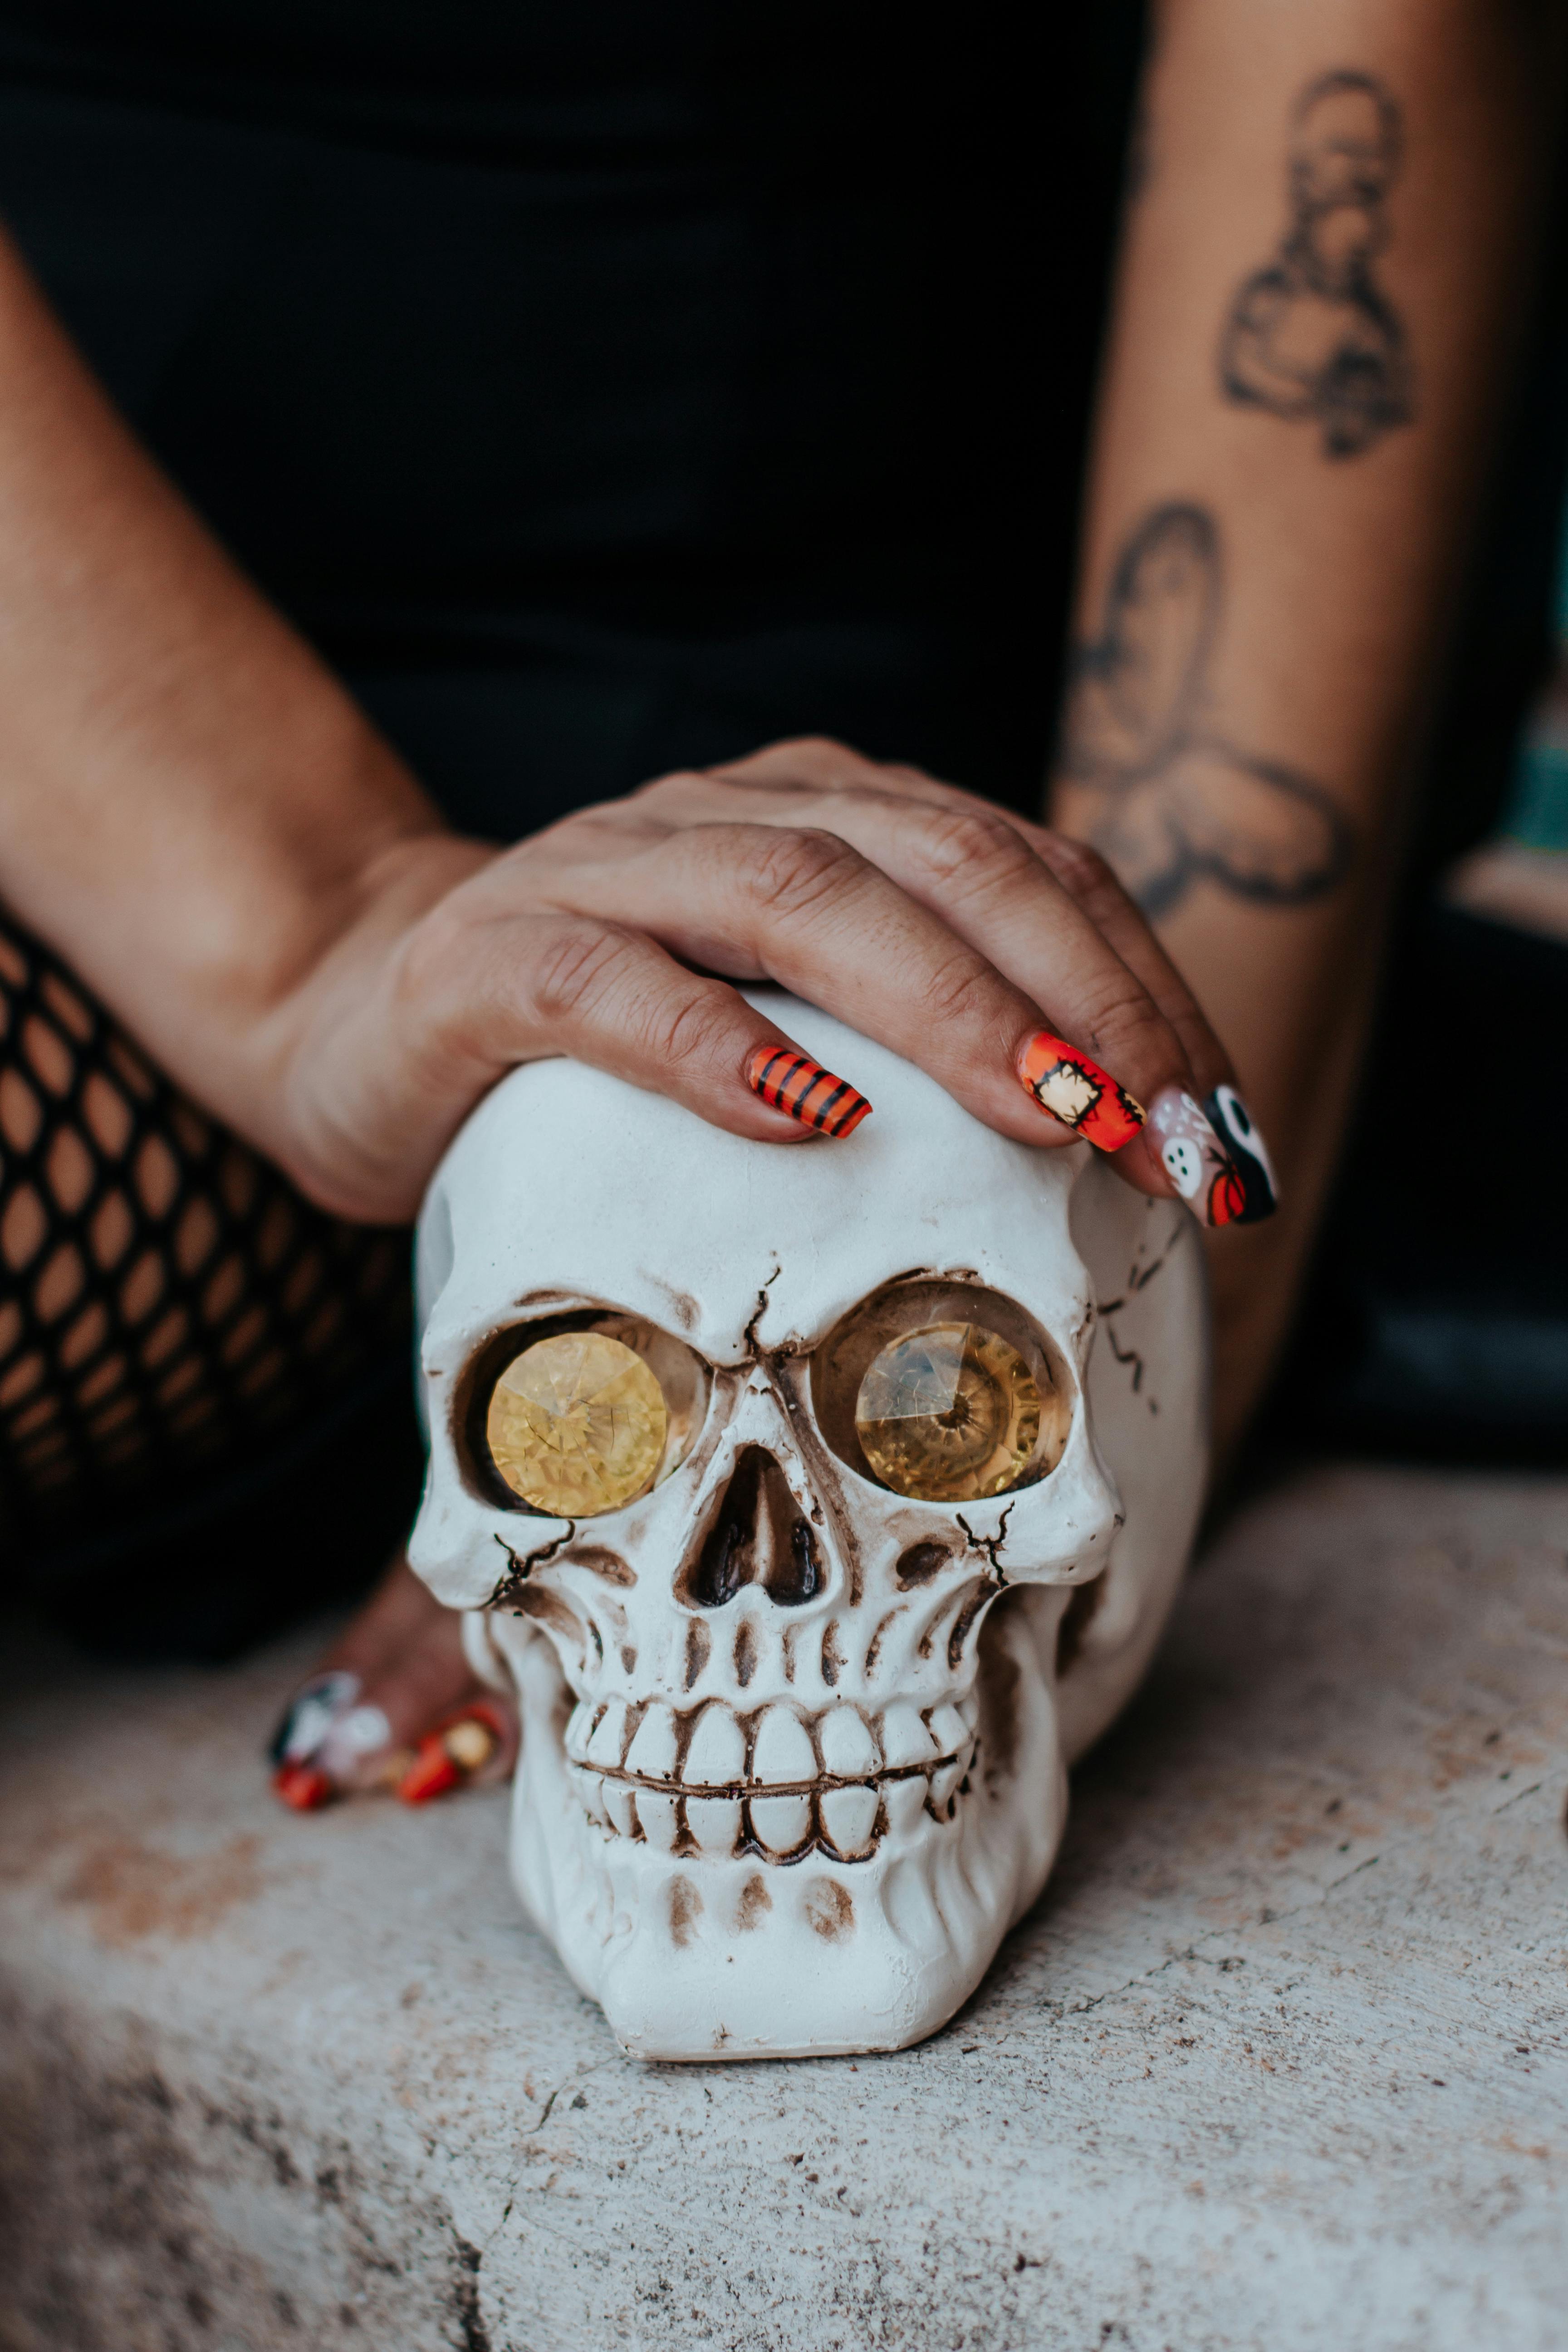 What Do Sugar Skull Tattoos Symbolize?